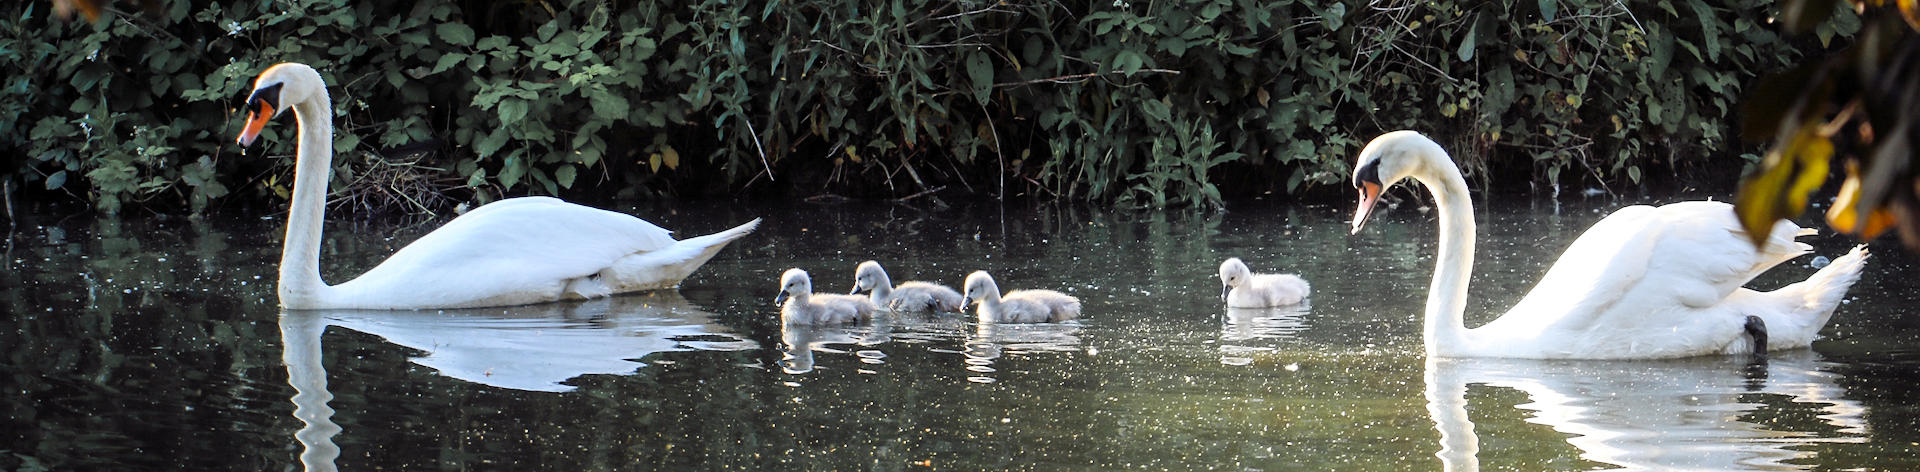 Feeding-swans